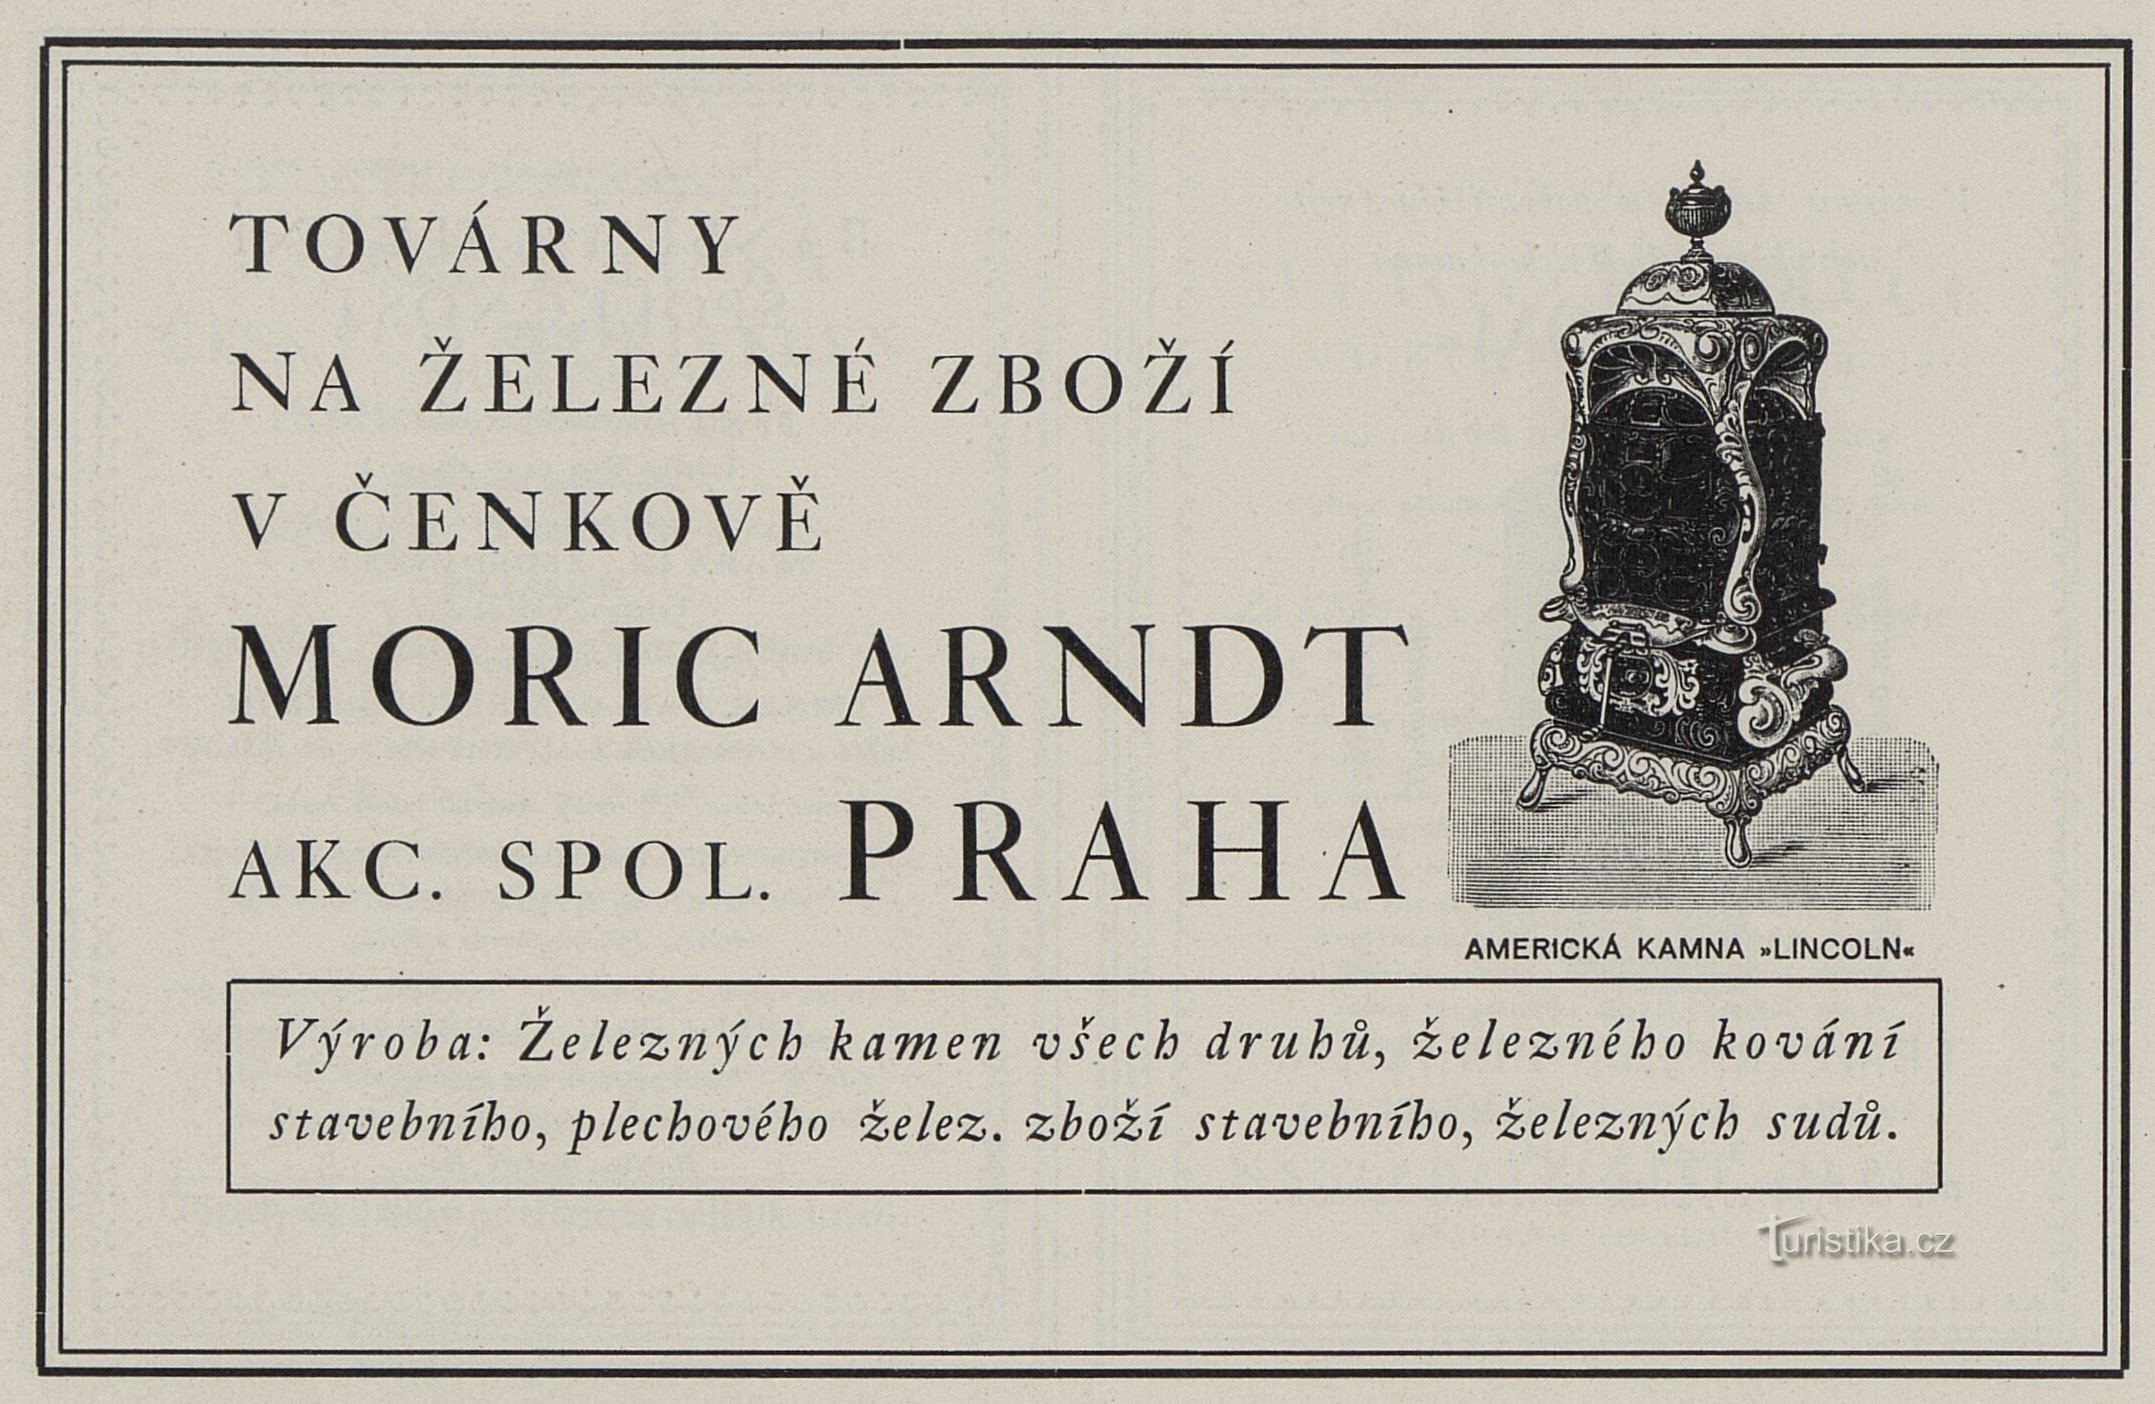 1925 年莫里克·阿恩特 (Moric Arndt) 的广告